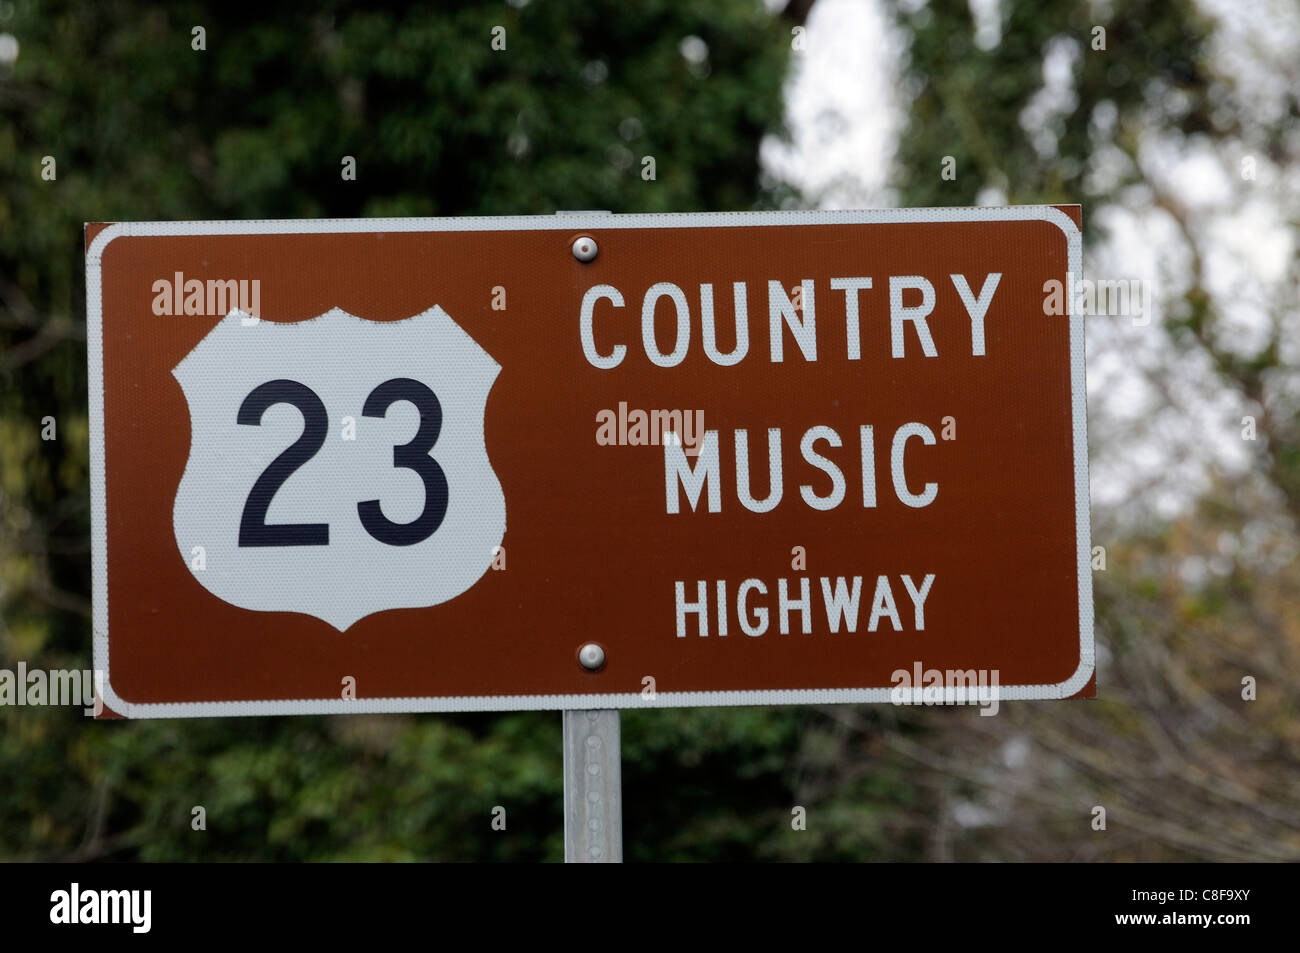 Signe de la route US 23 désignation dans le Kentucky et la Virginie en tant que Country Music Highway Banque D'Images